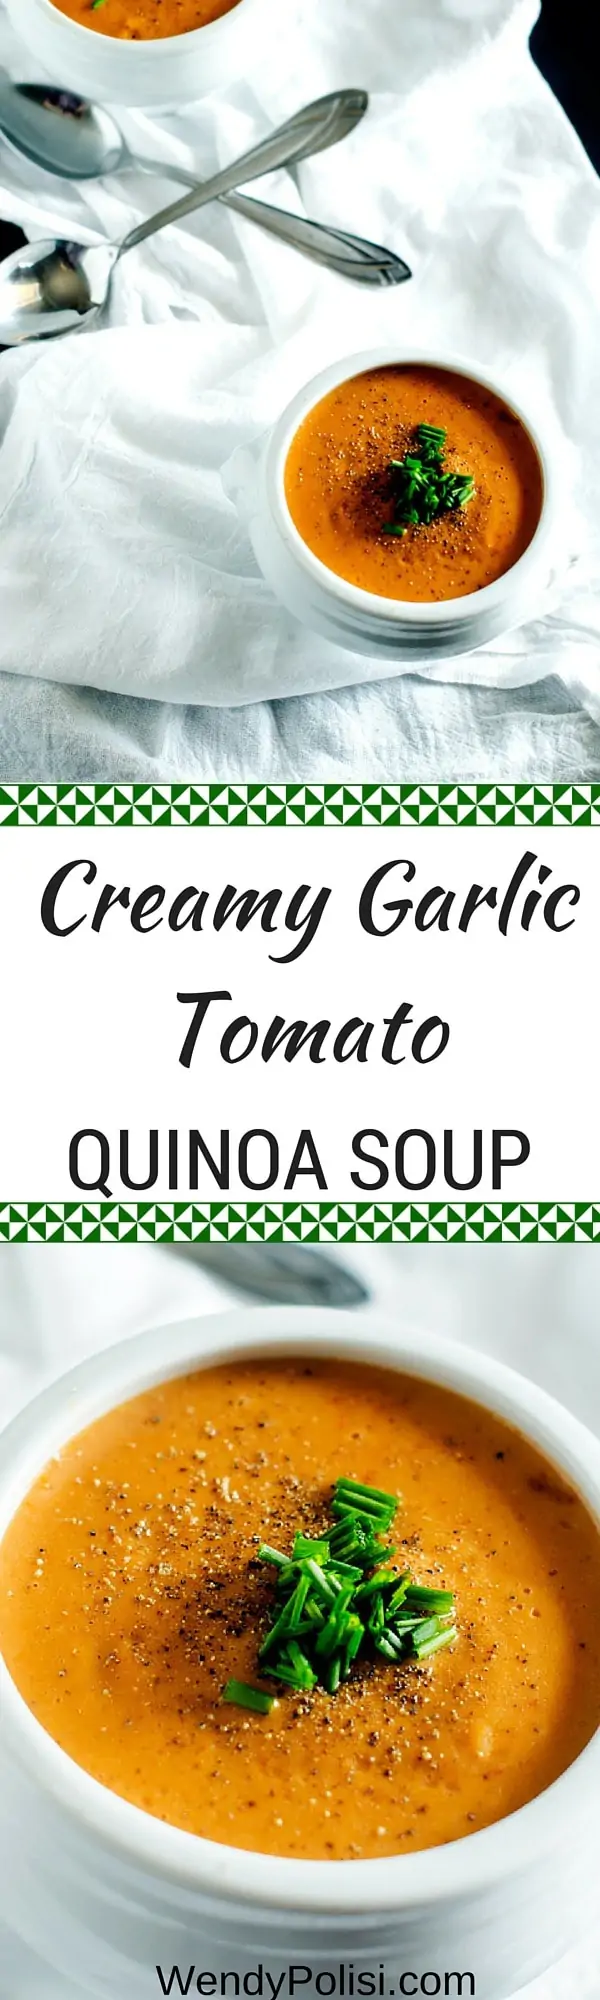 Creamy Garlic Tomato Quinoa Soup - Made with Quinoa Cream! WendyPolisi.com